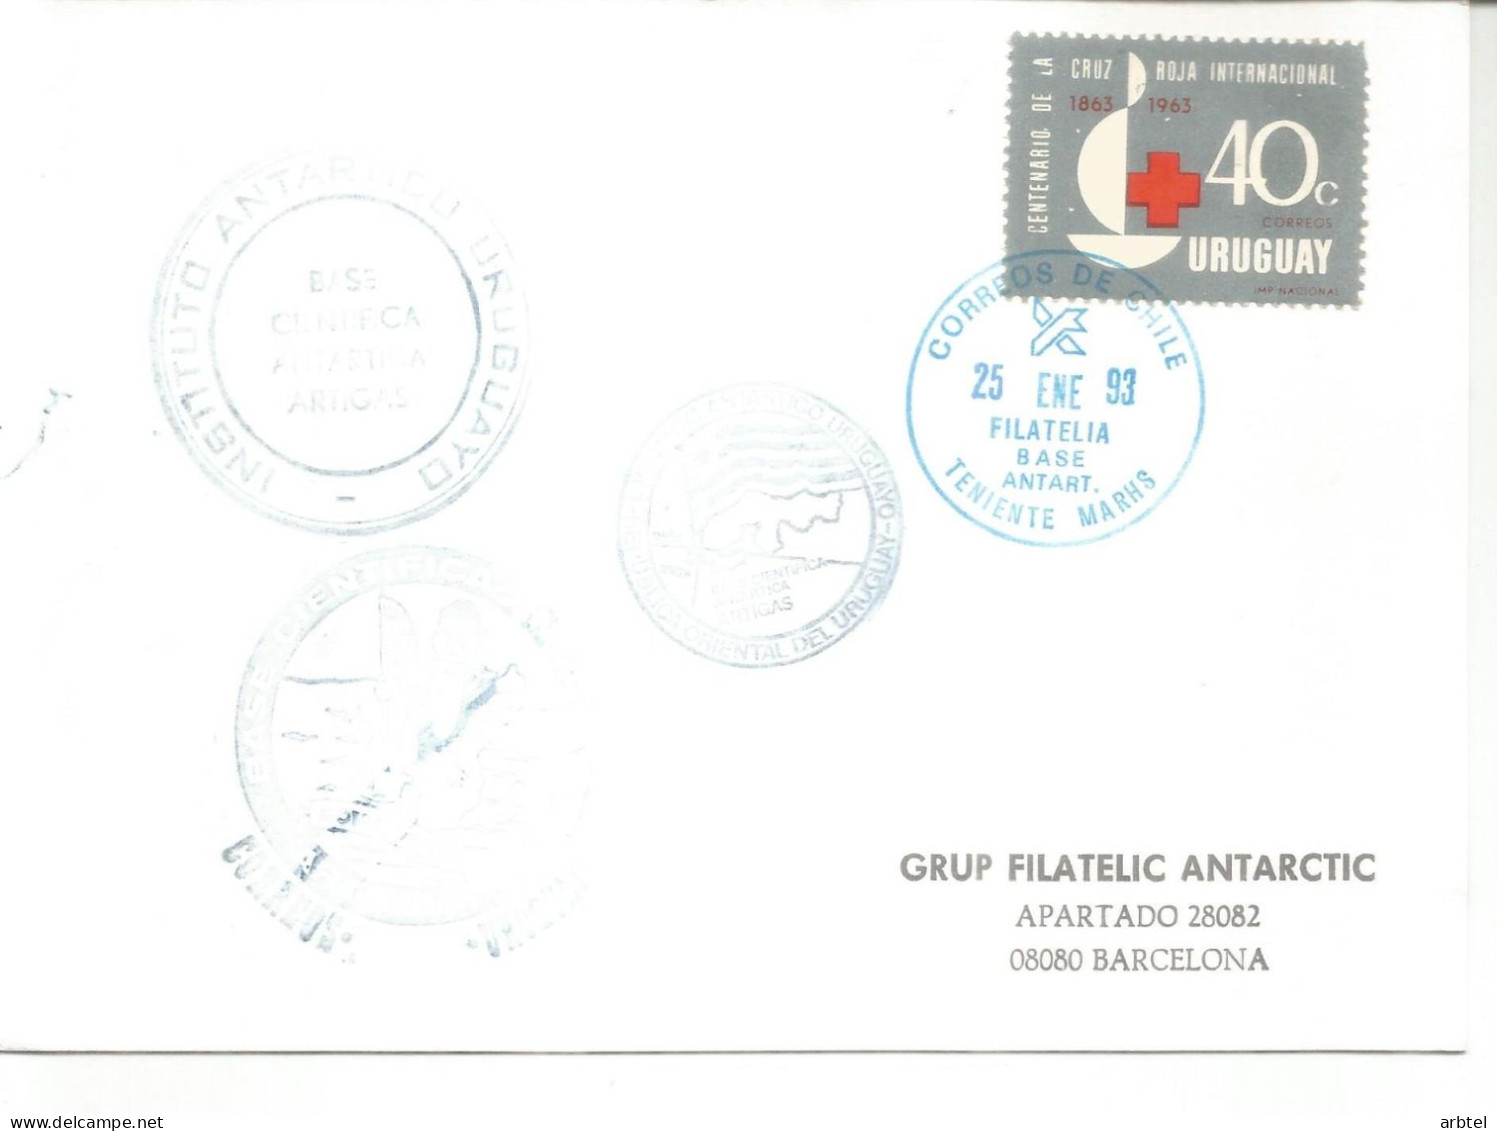 ANTARTIDA ANTARCTIC URUGUAY BASE CHILE MARHS Y BASE ARTIGAS 1993 - Internationales Polarjahr